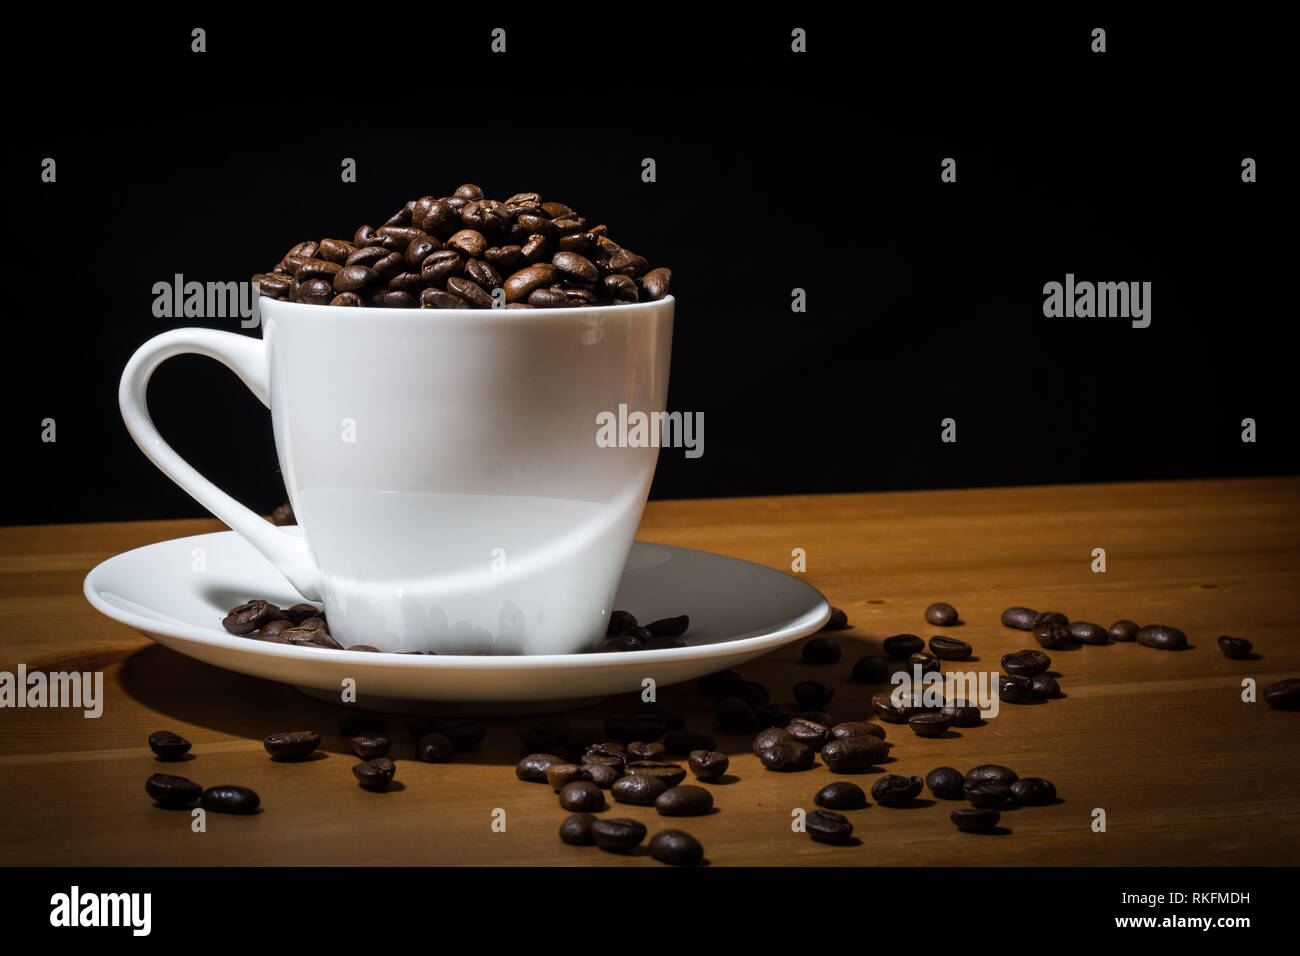 Tasse blanche remplie de grains de café et café en grains éparpillés sur une surface en bois et sur la soucoupe blanche. Banque D'Images